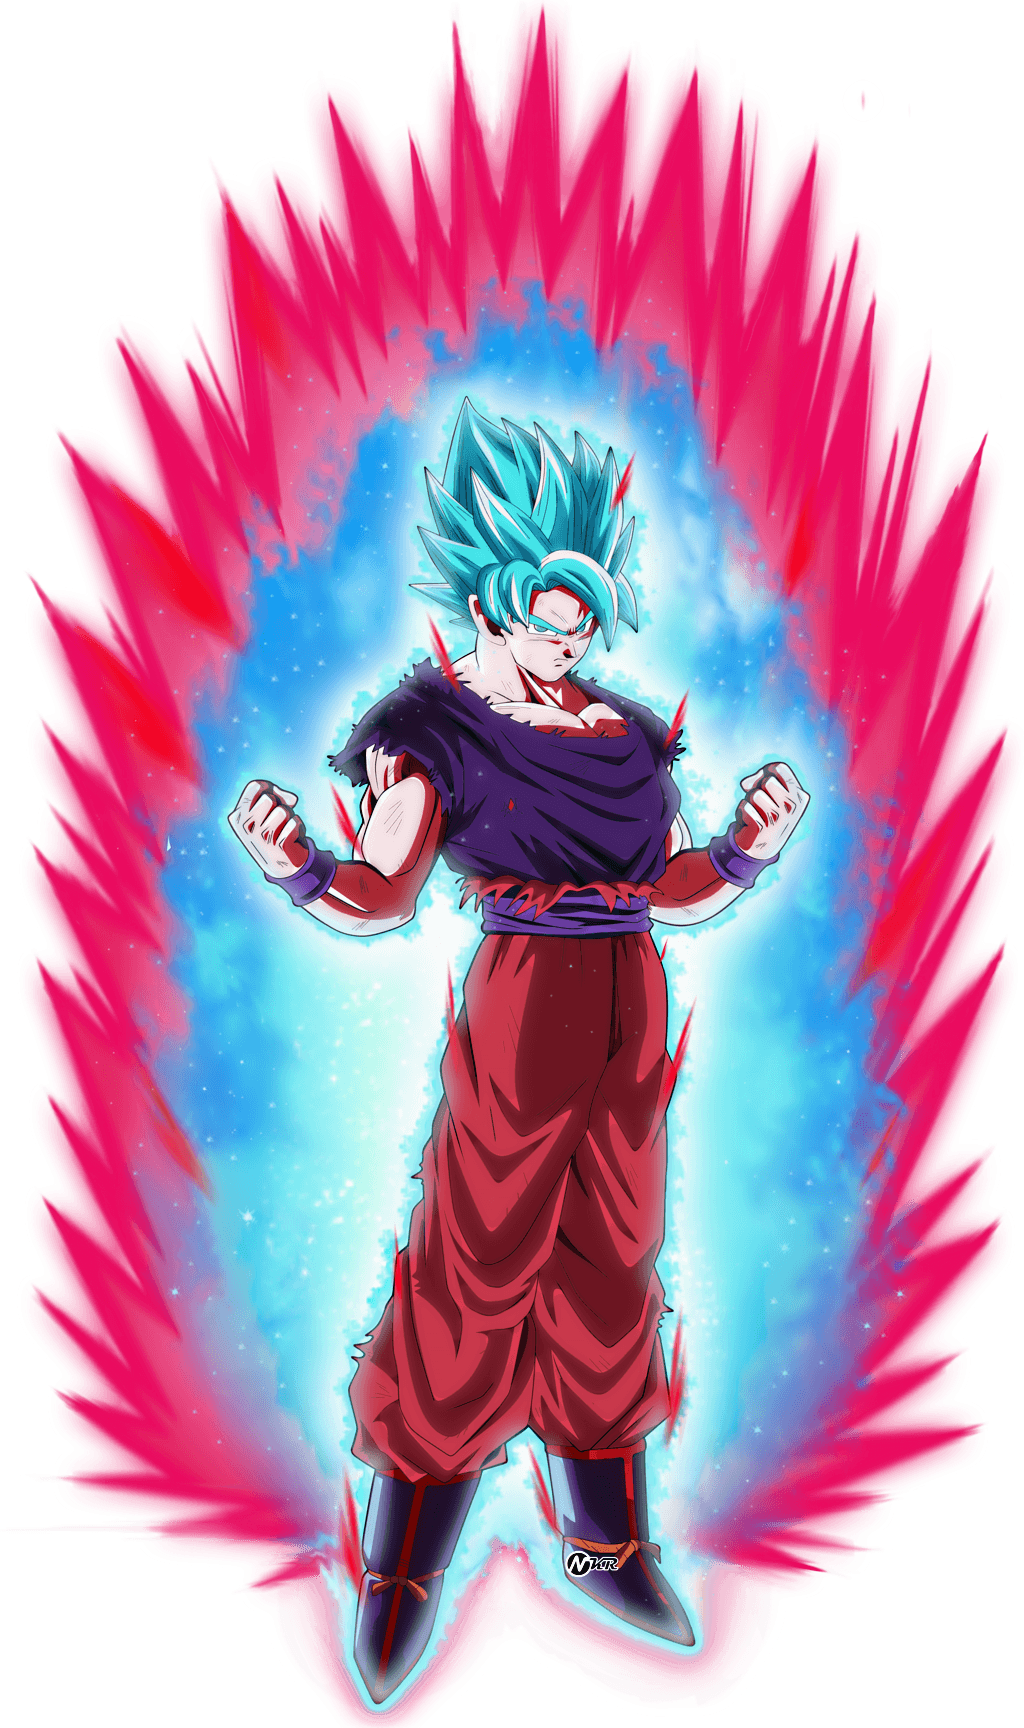 Goku ssgss blue kaioken x20  Goku wallpaper, Dragon ball super